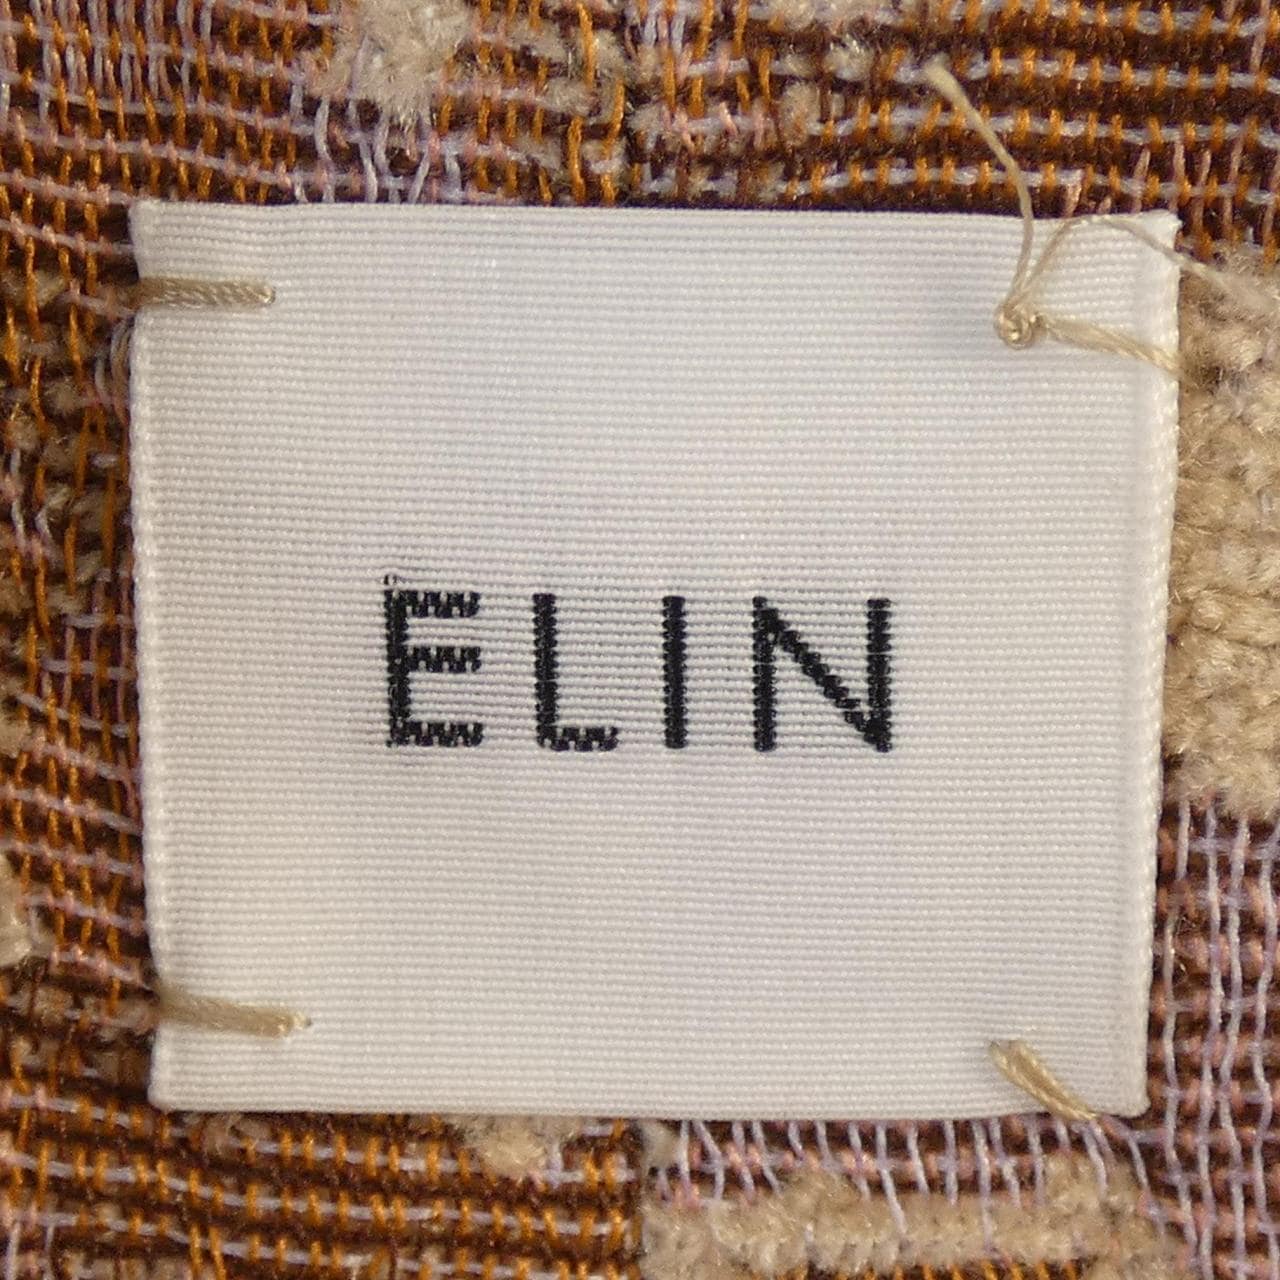 エリン ELIN スカート